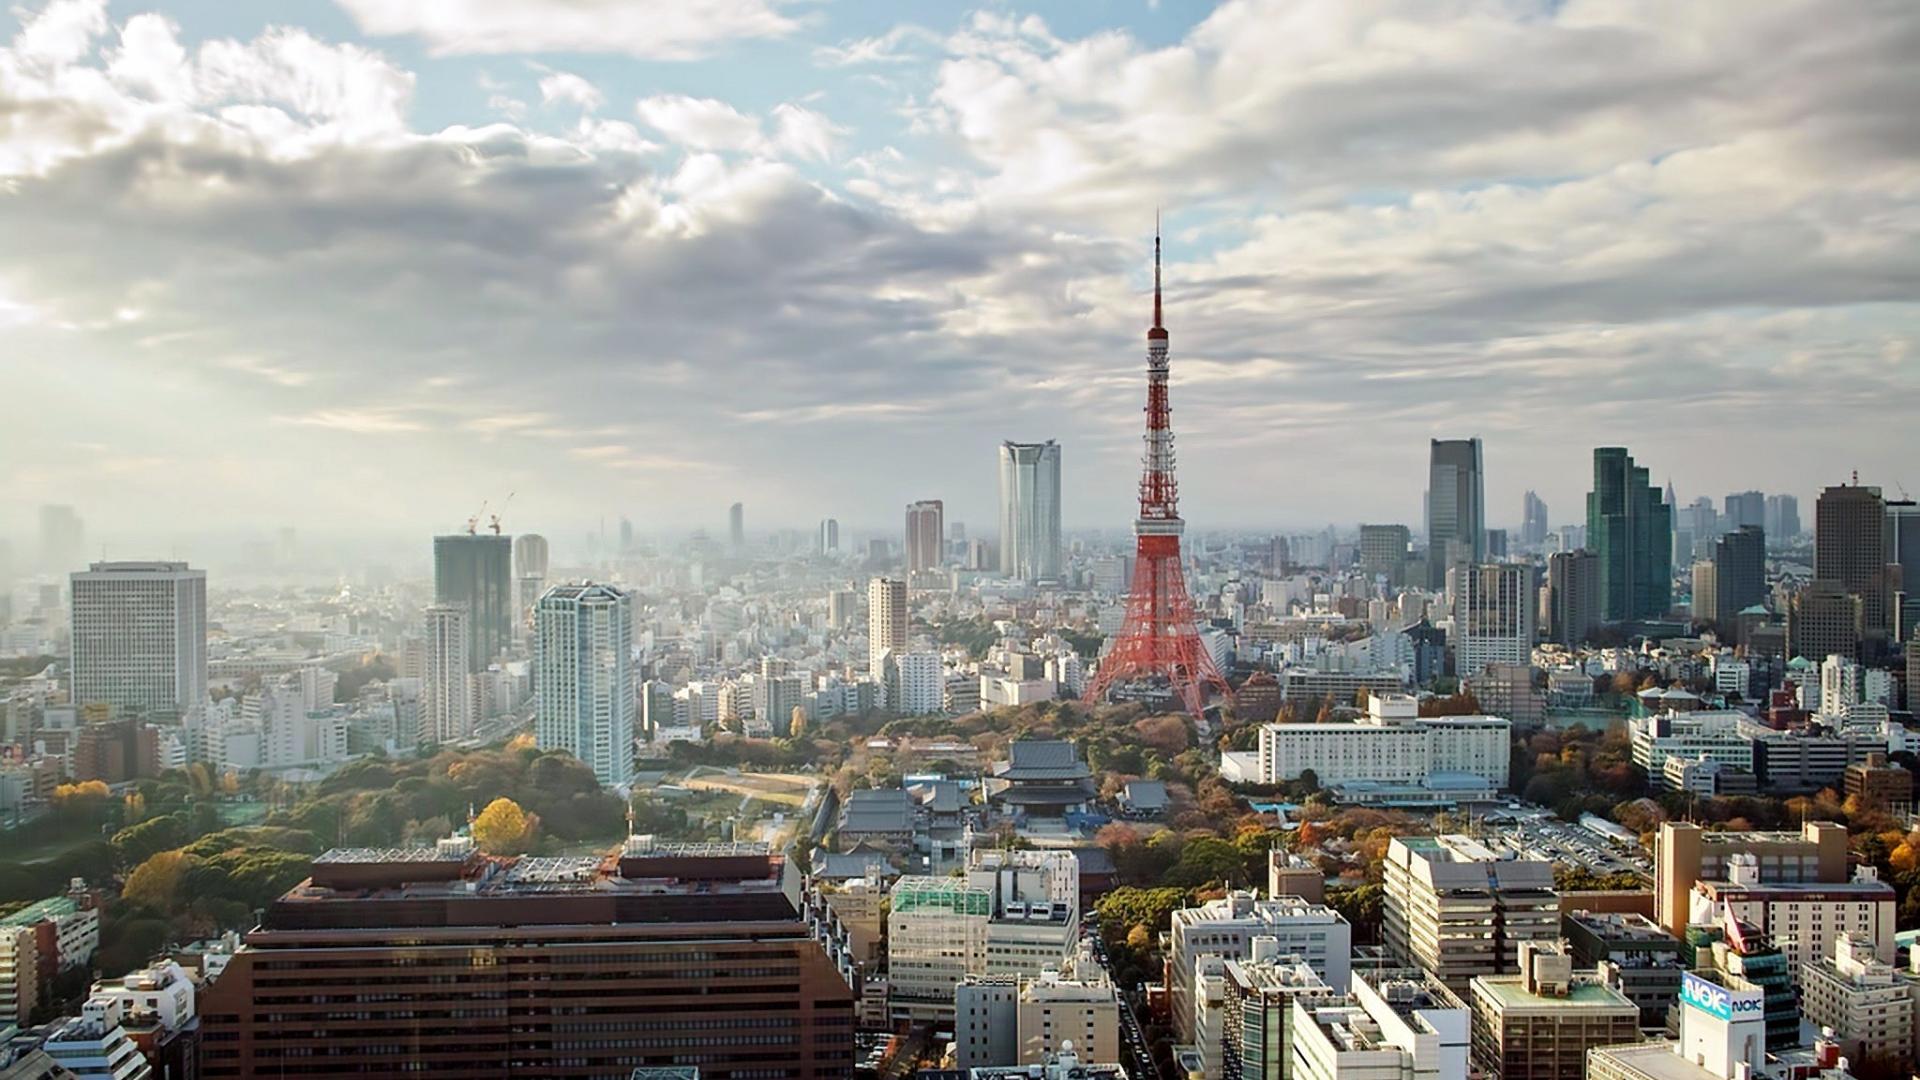 fond d'écran de la tour de tokyo,ville,paysage urbain,zone métropolitaine,zone urbaine,horizon